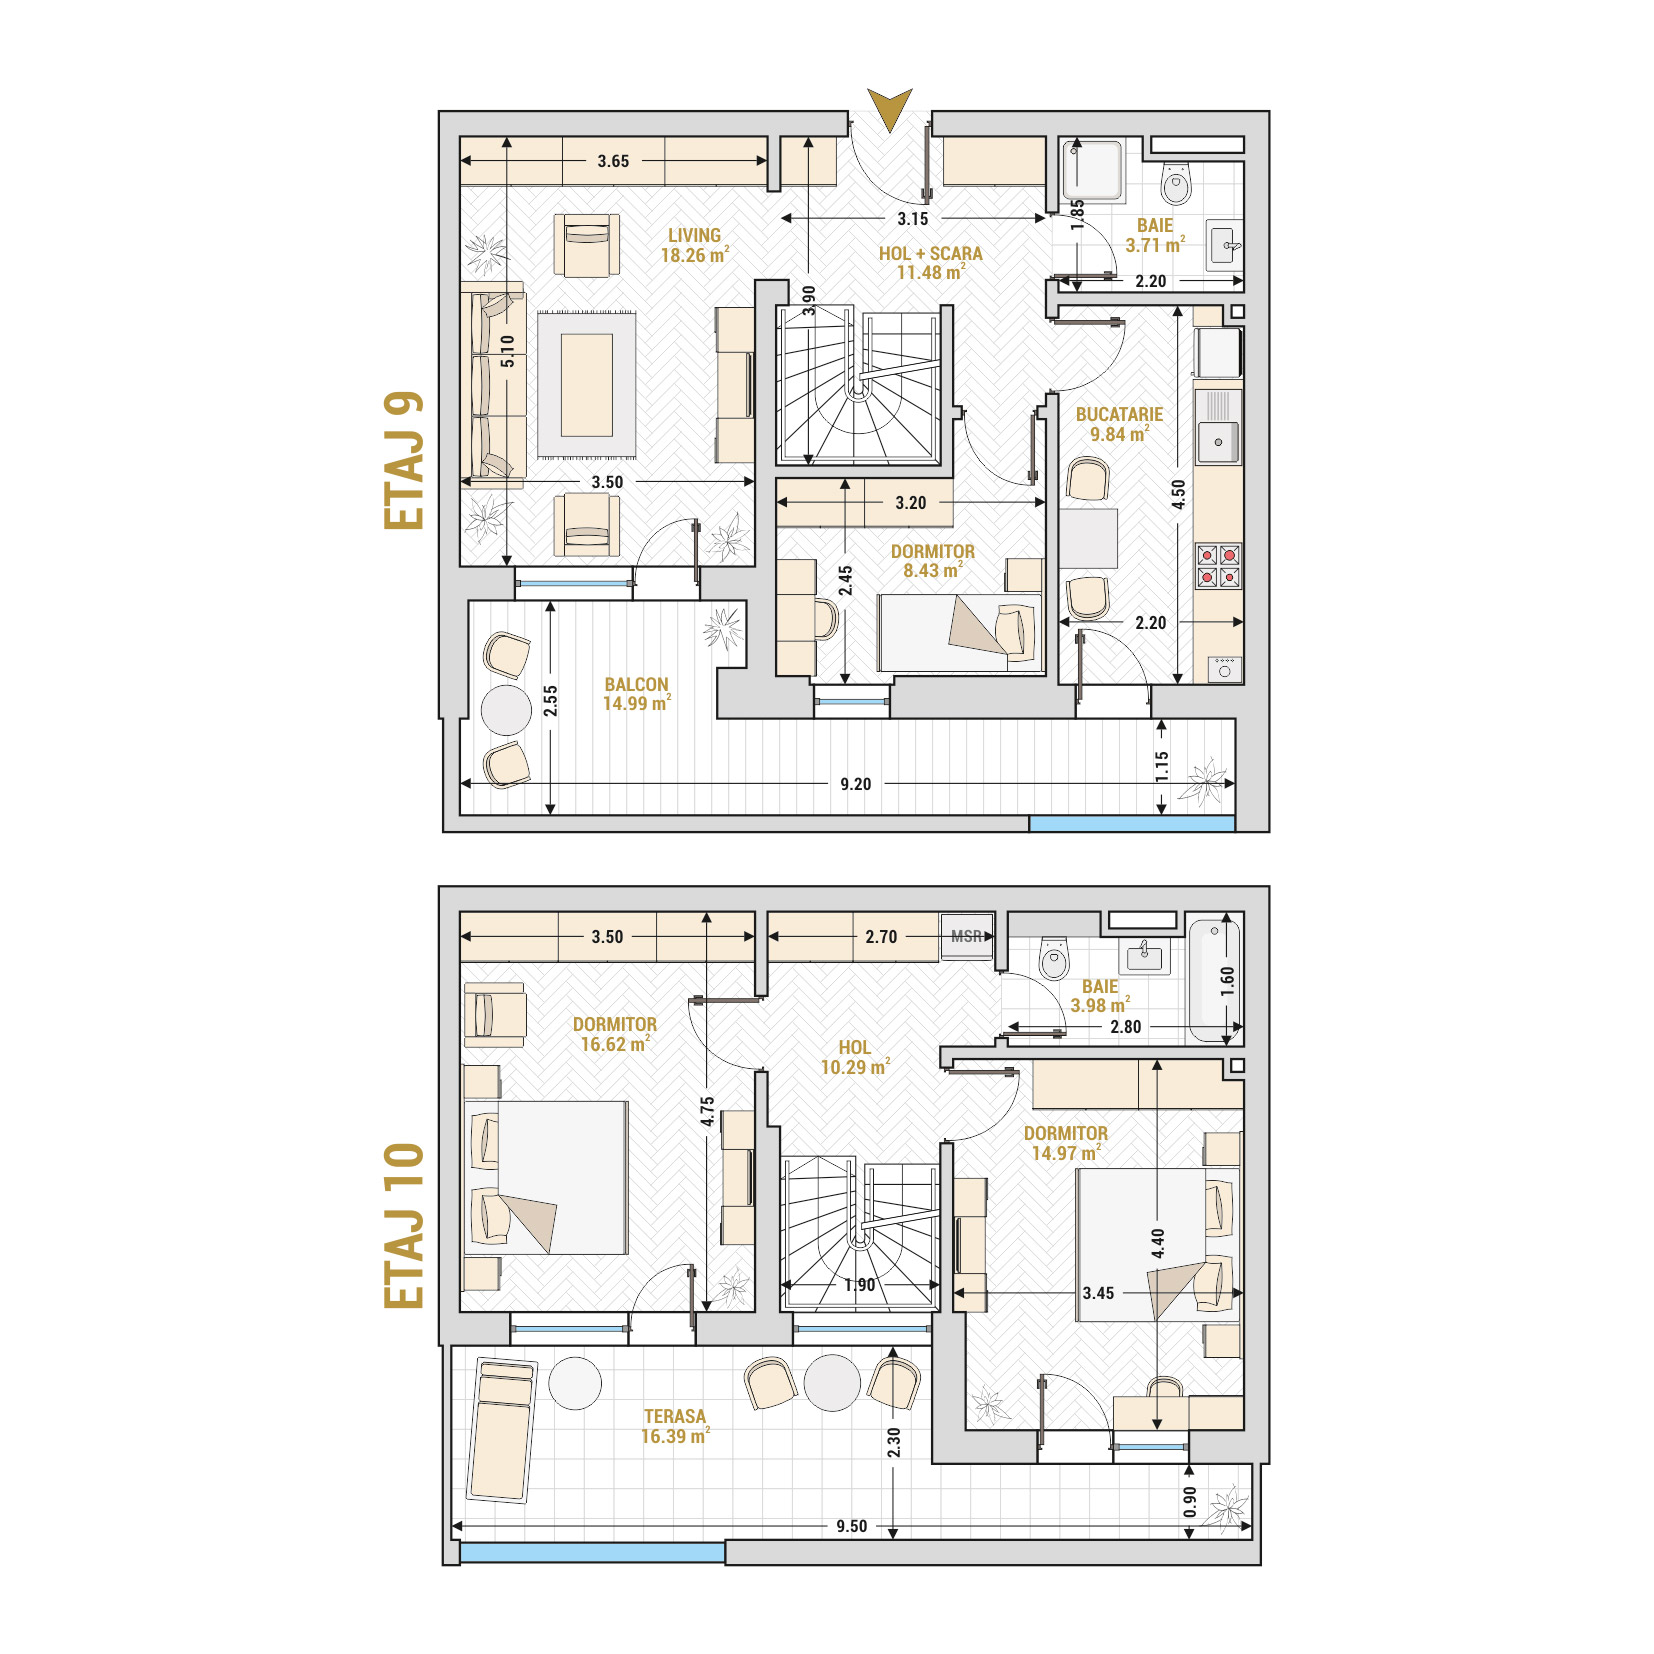 Penthouse 4 Camere Tip 3 Corp 5 - Drumul Taberei Residence - Apartamente de vanzare Bucuresti - Suprafata utila totala - 128.96 mp